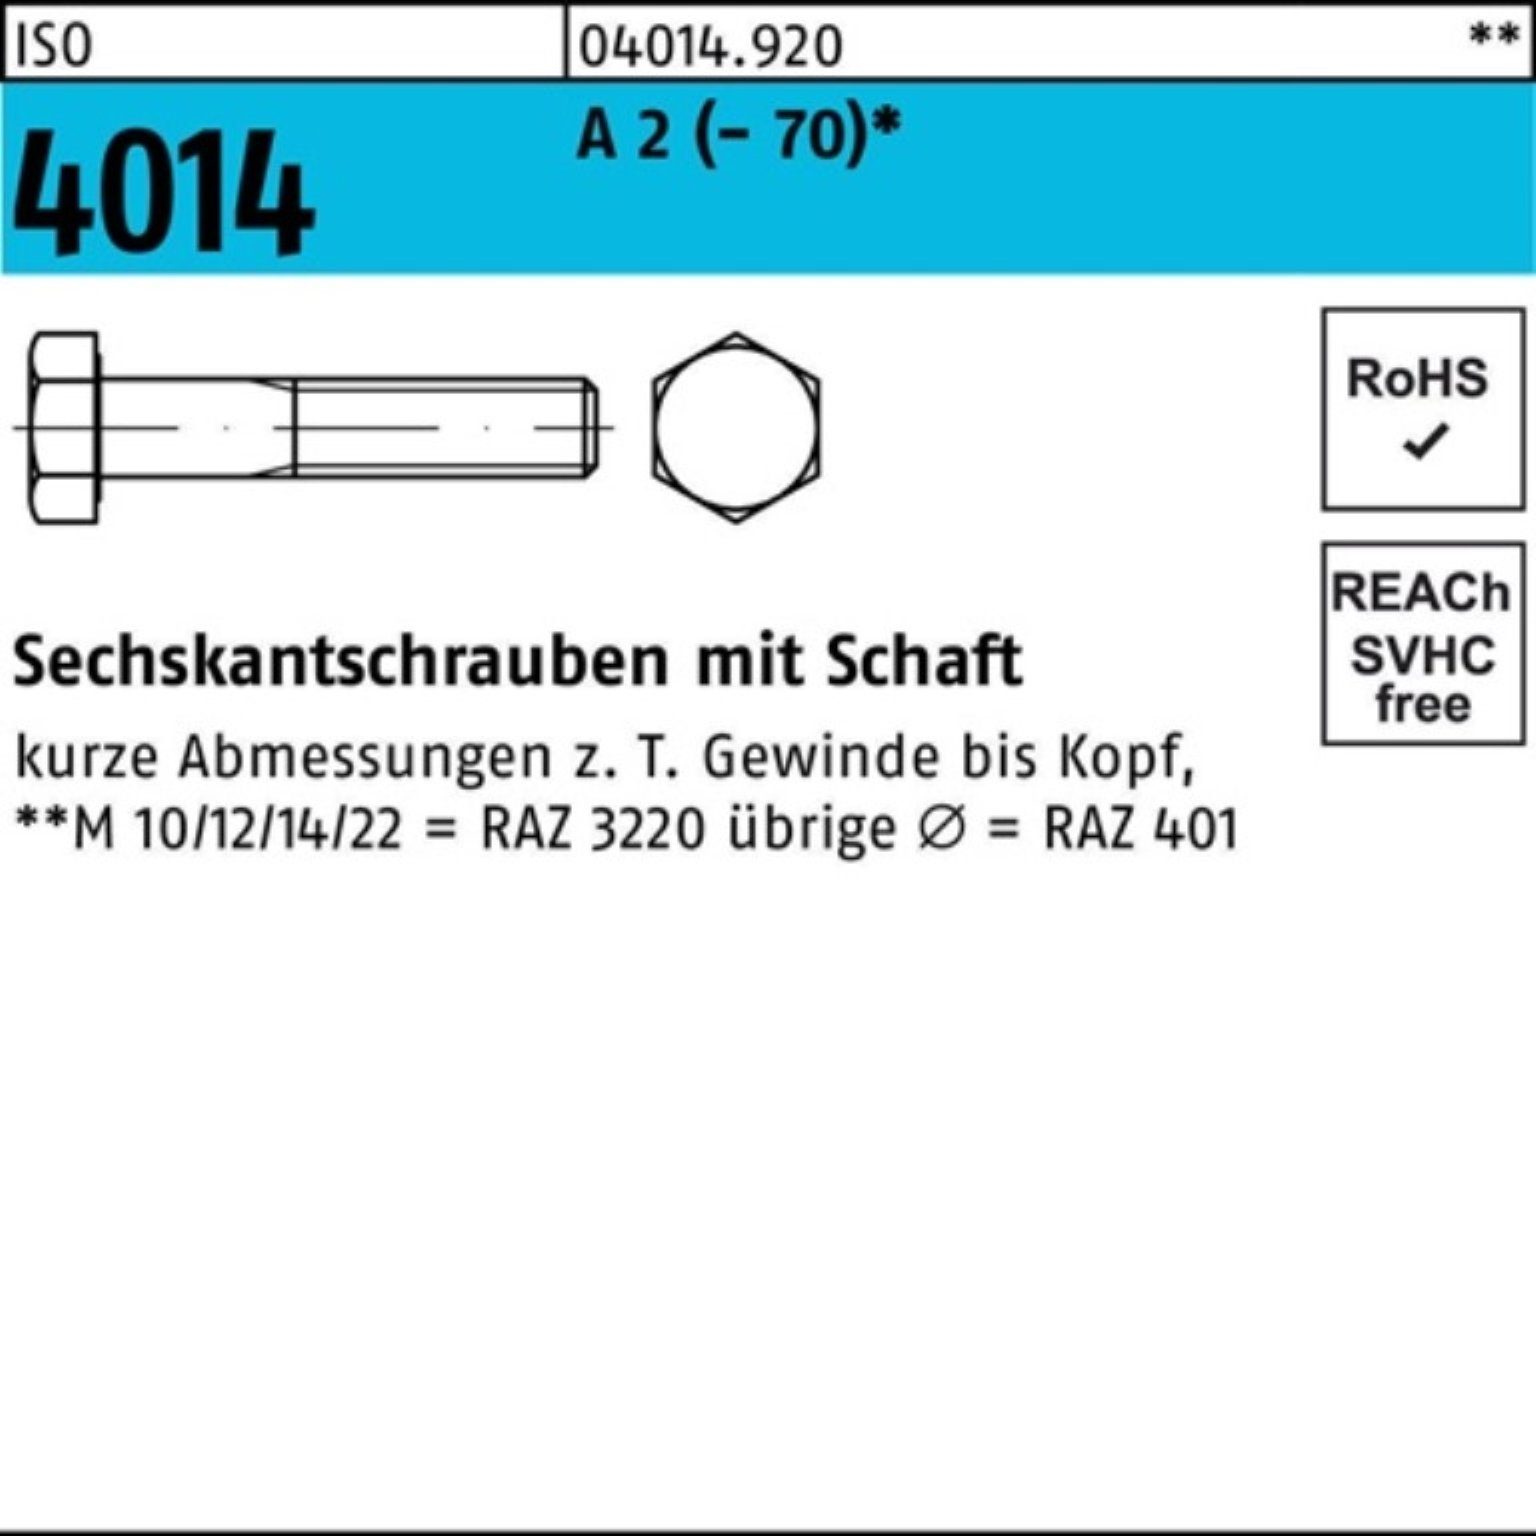 Bufab Sechskantschraube 100er Pack Sechskantschraube ISO 4014 Schaft M18x 100 A 2 (70) 25 St